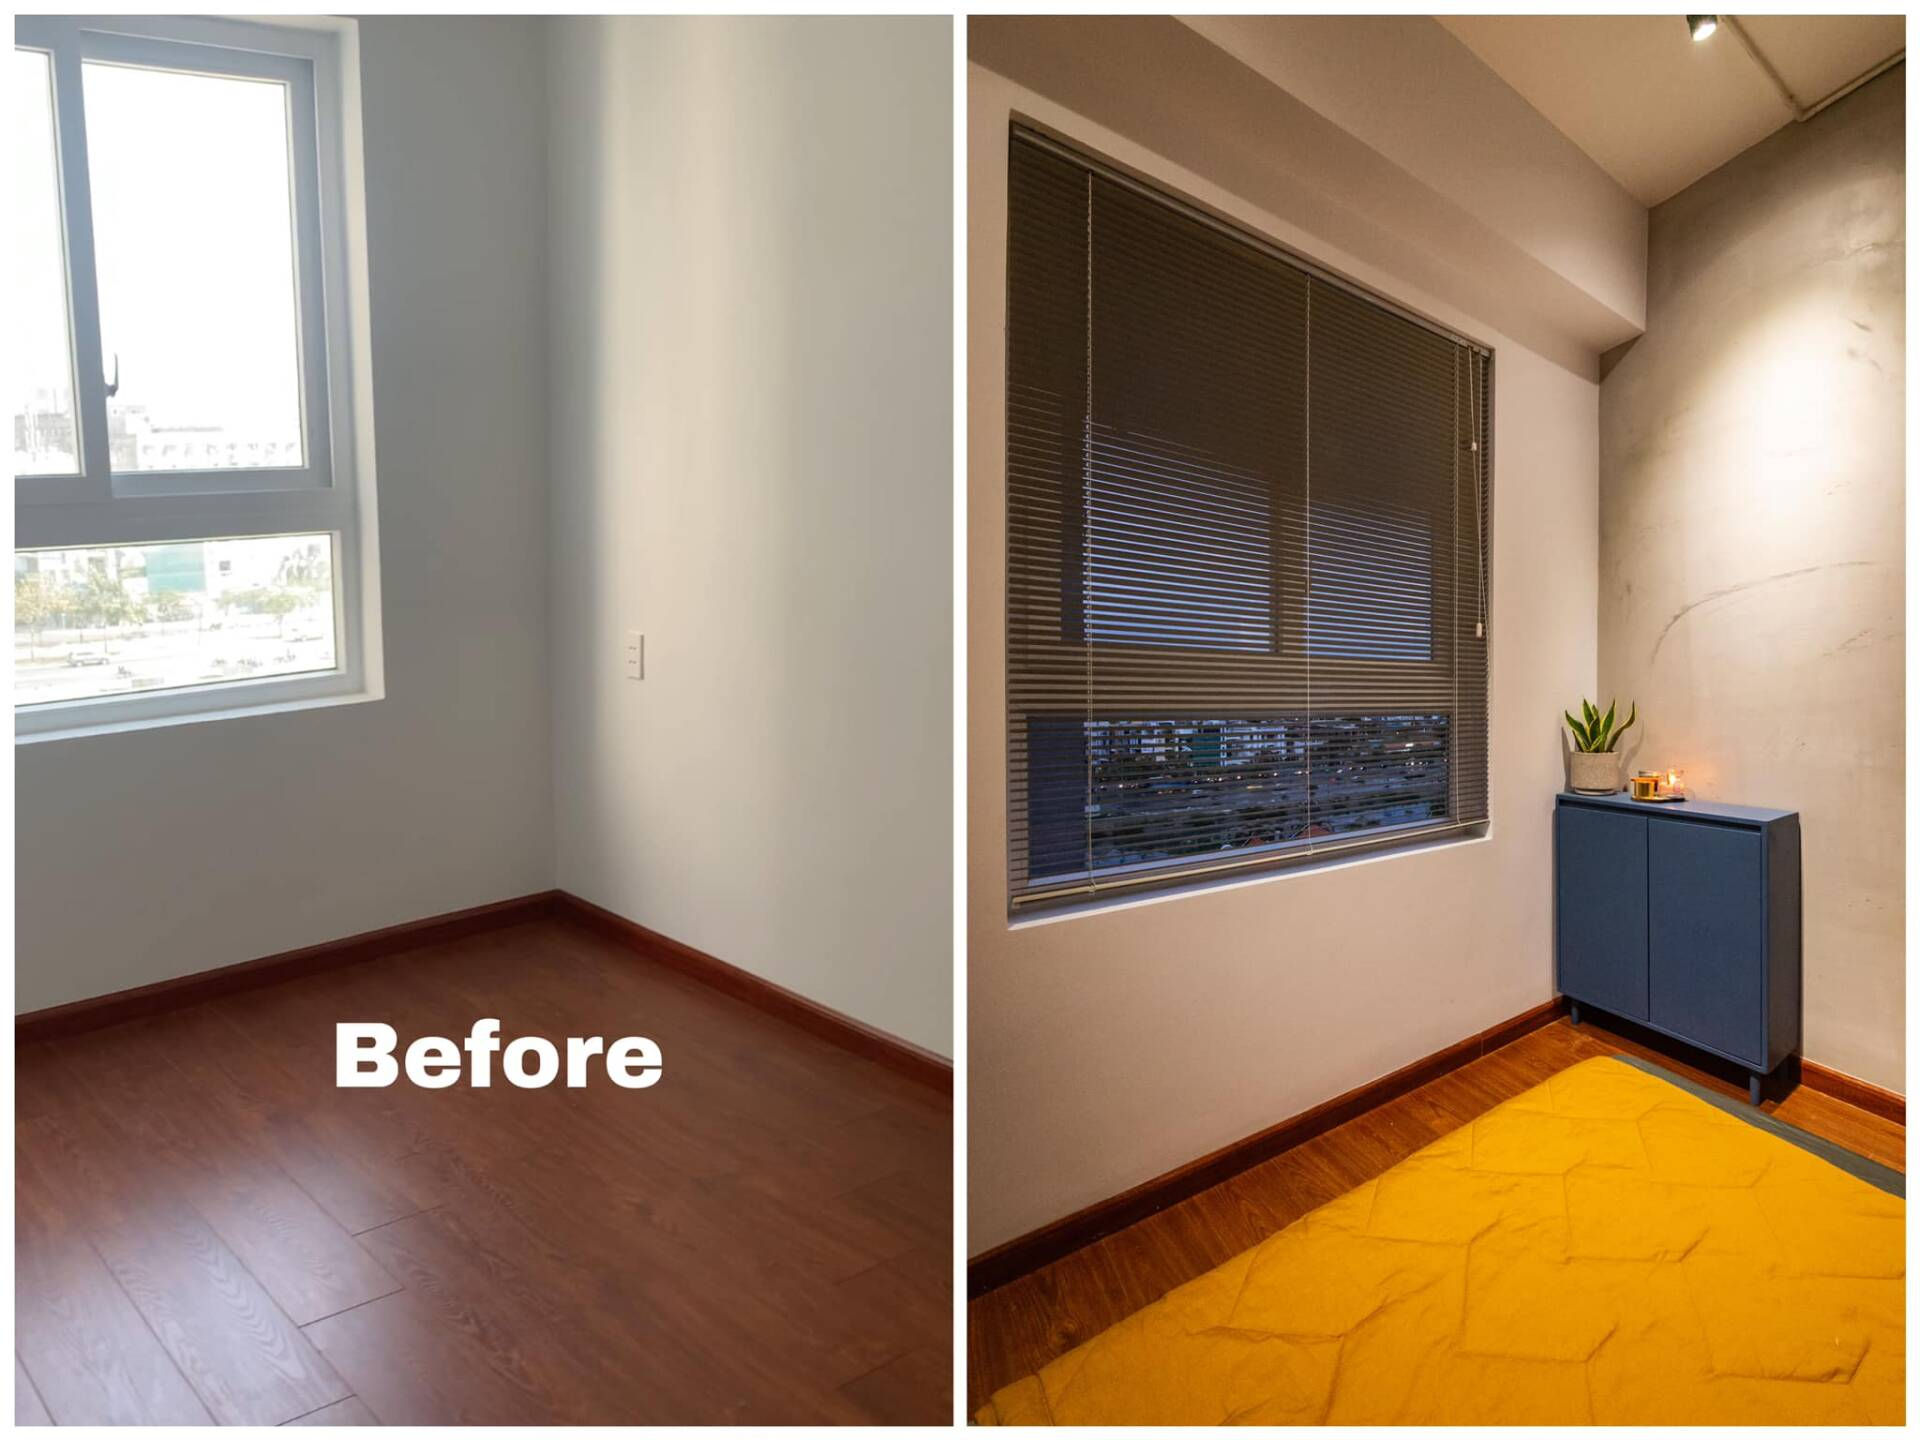  Không gian căn hộ trước và sau khi hoàn thiện có nhiều thay đổi.